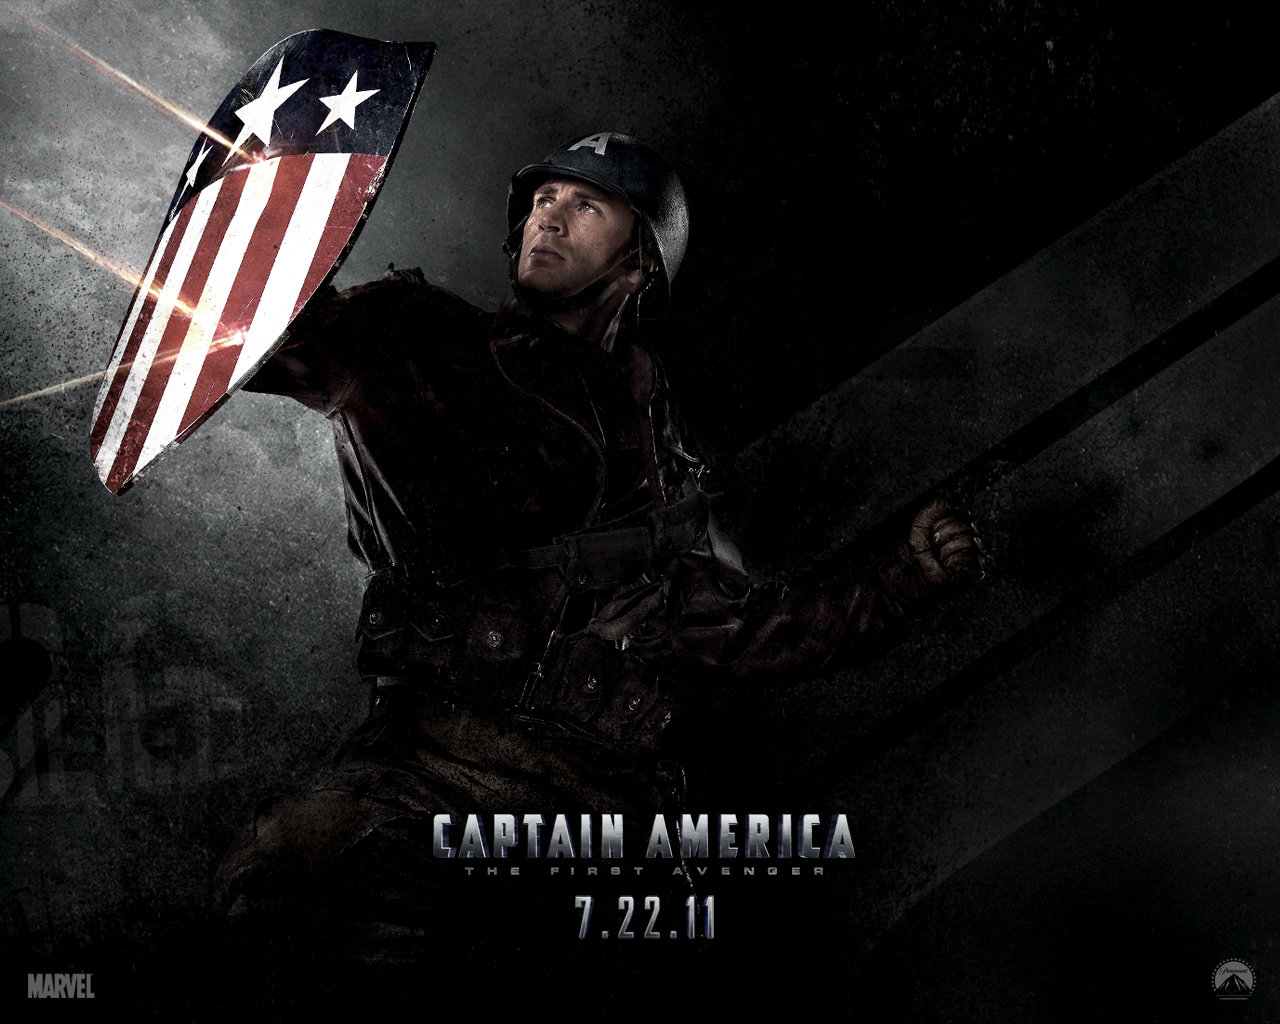 http://3.bp.blogspot.com/-eZFuy1cKmJg/TwaUWF-6MNI/AAAAAAAADl8/WgnqD1LpRpI/s1600/Captain-America-The-First-Avenger-08.jpg